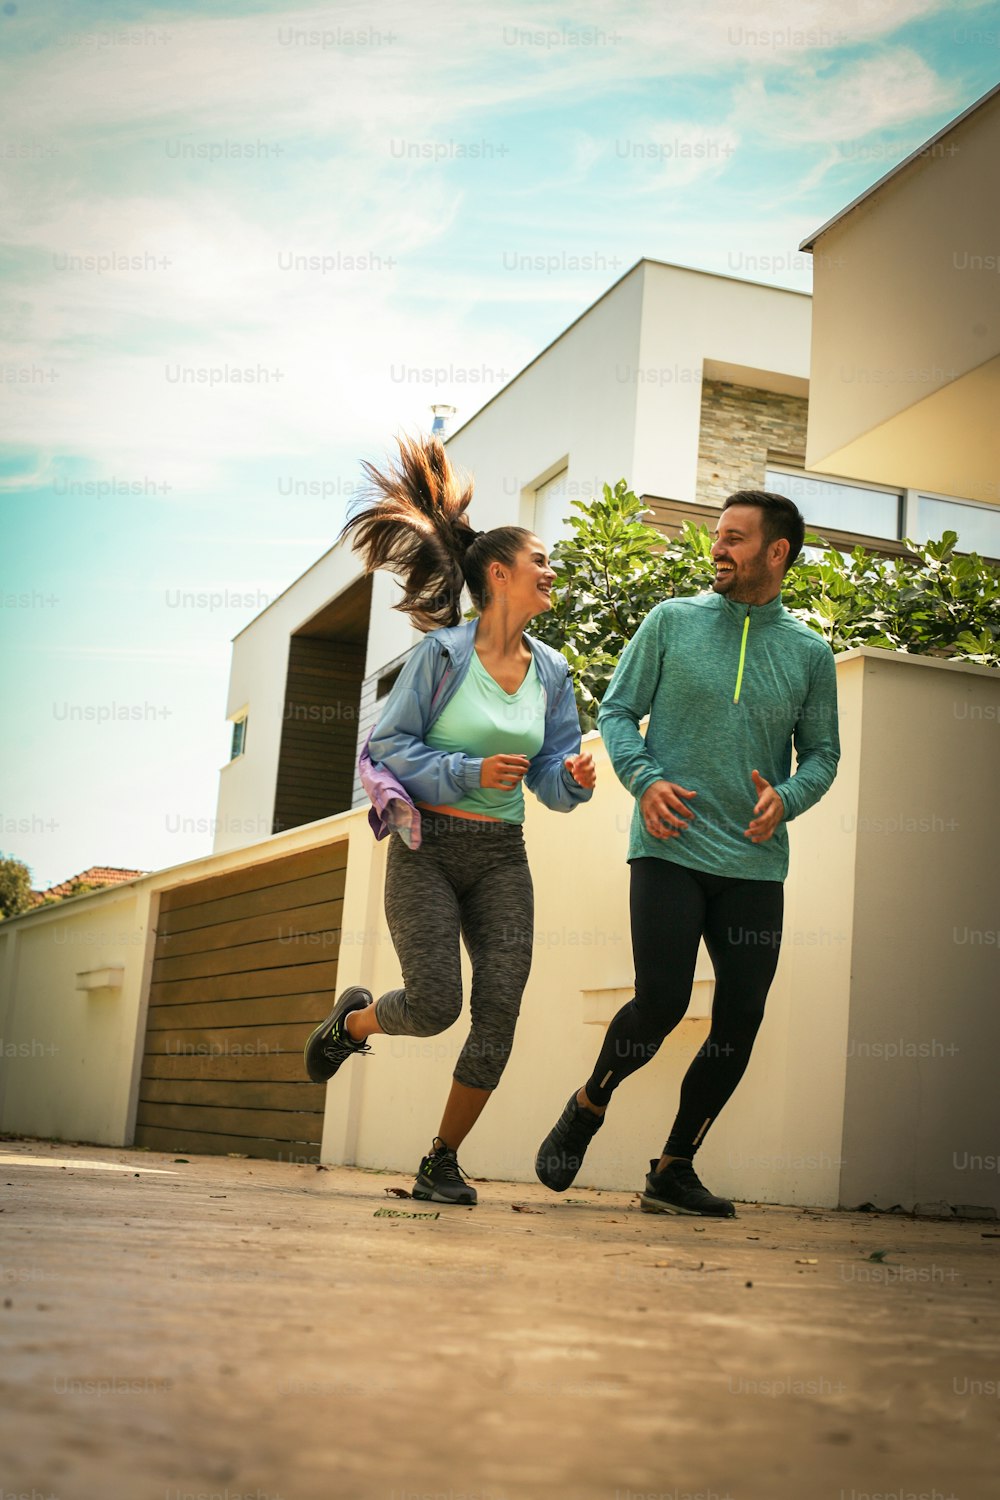 Giovane coppia che corre insieme sul marciapiede. Giovani che fanno esercizio fisico.